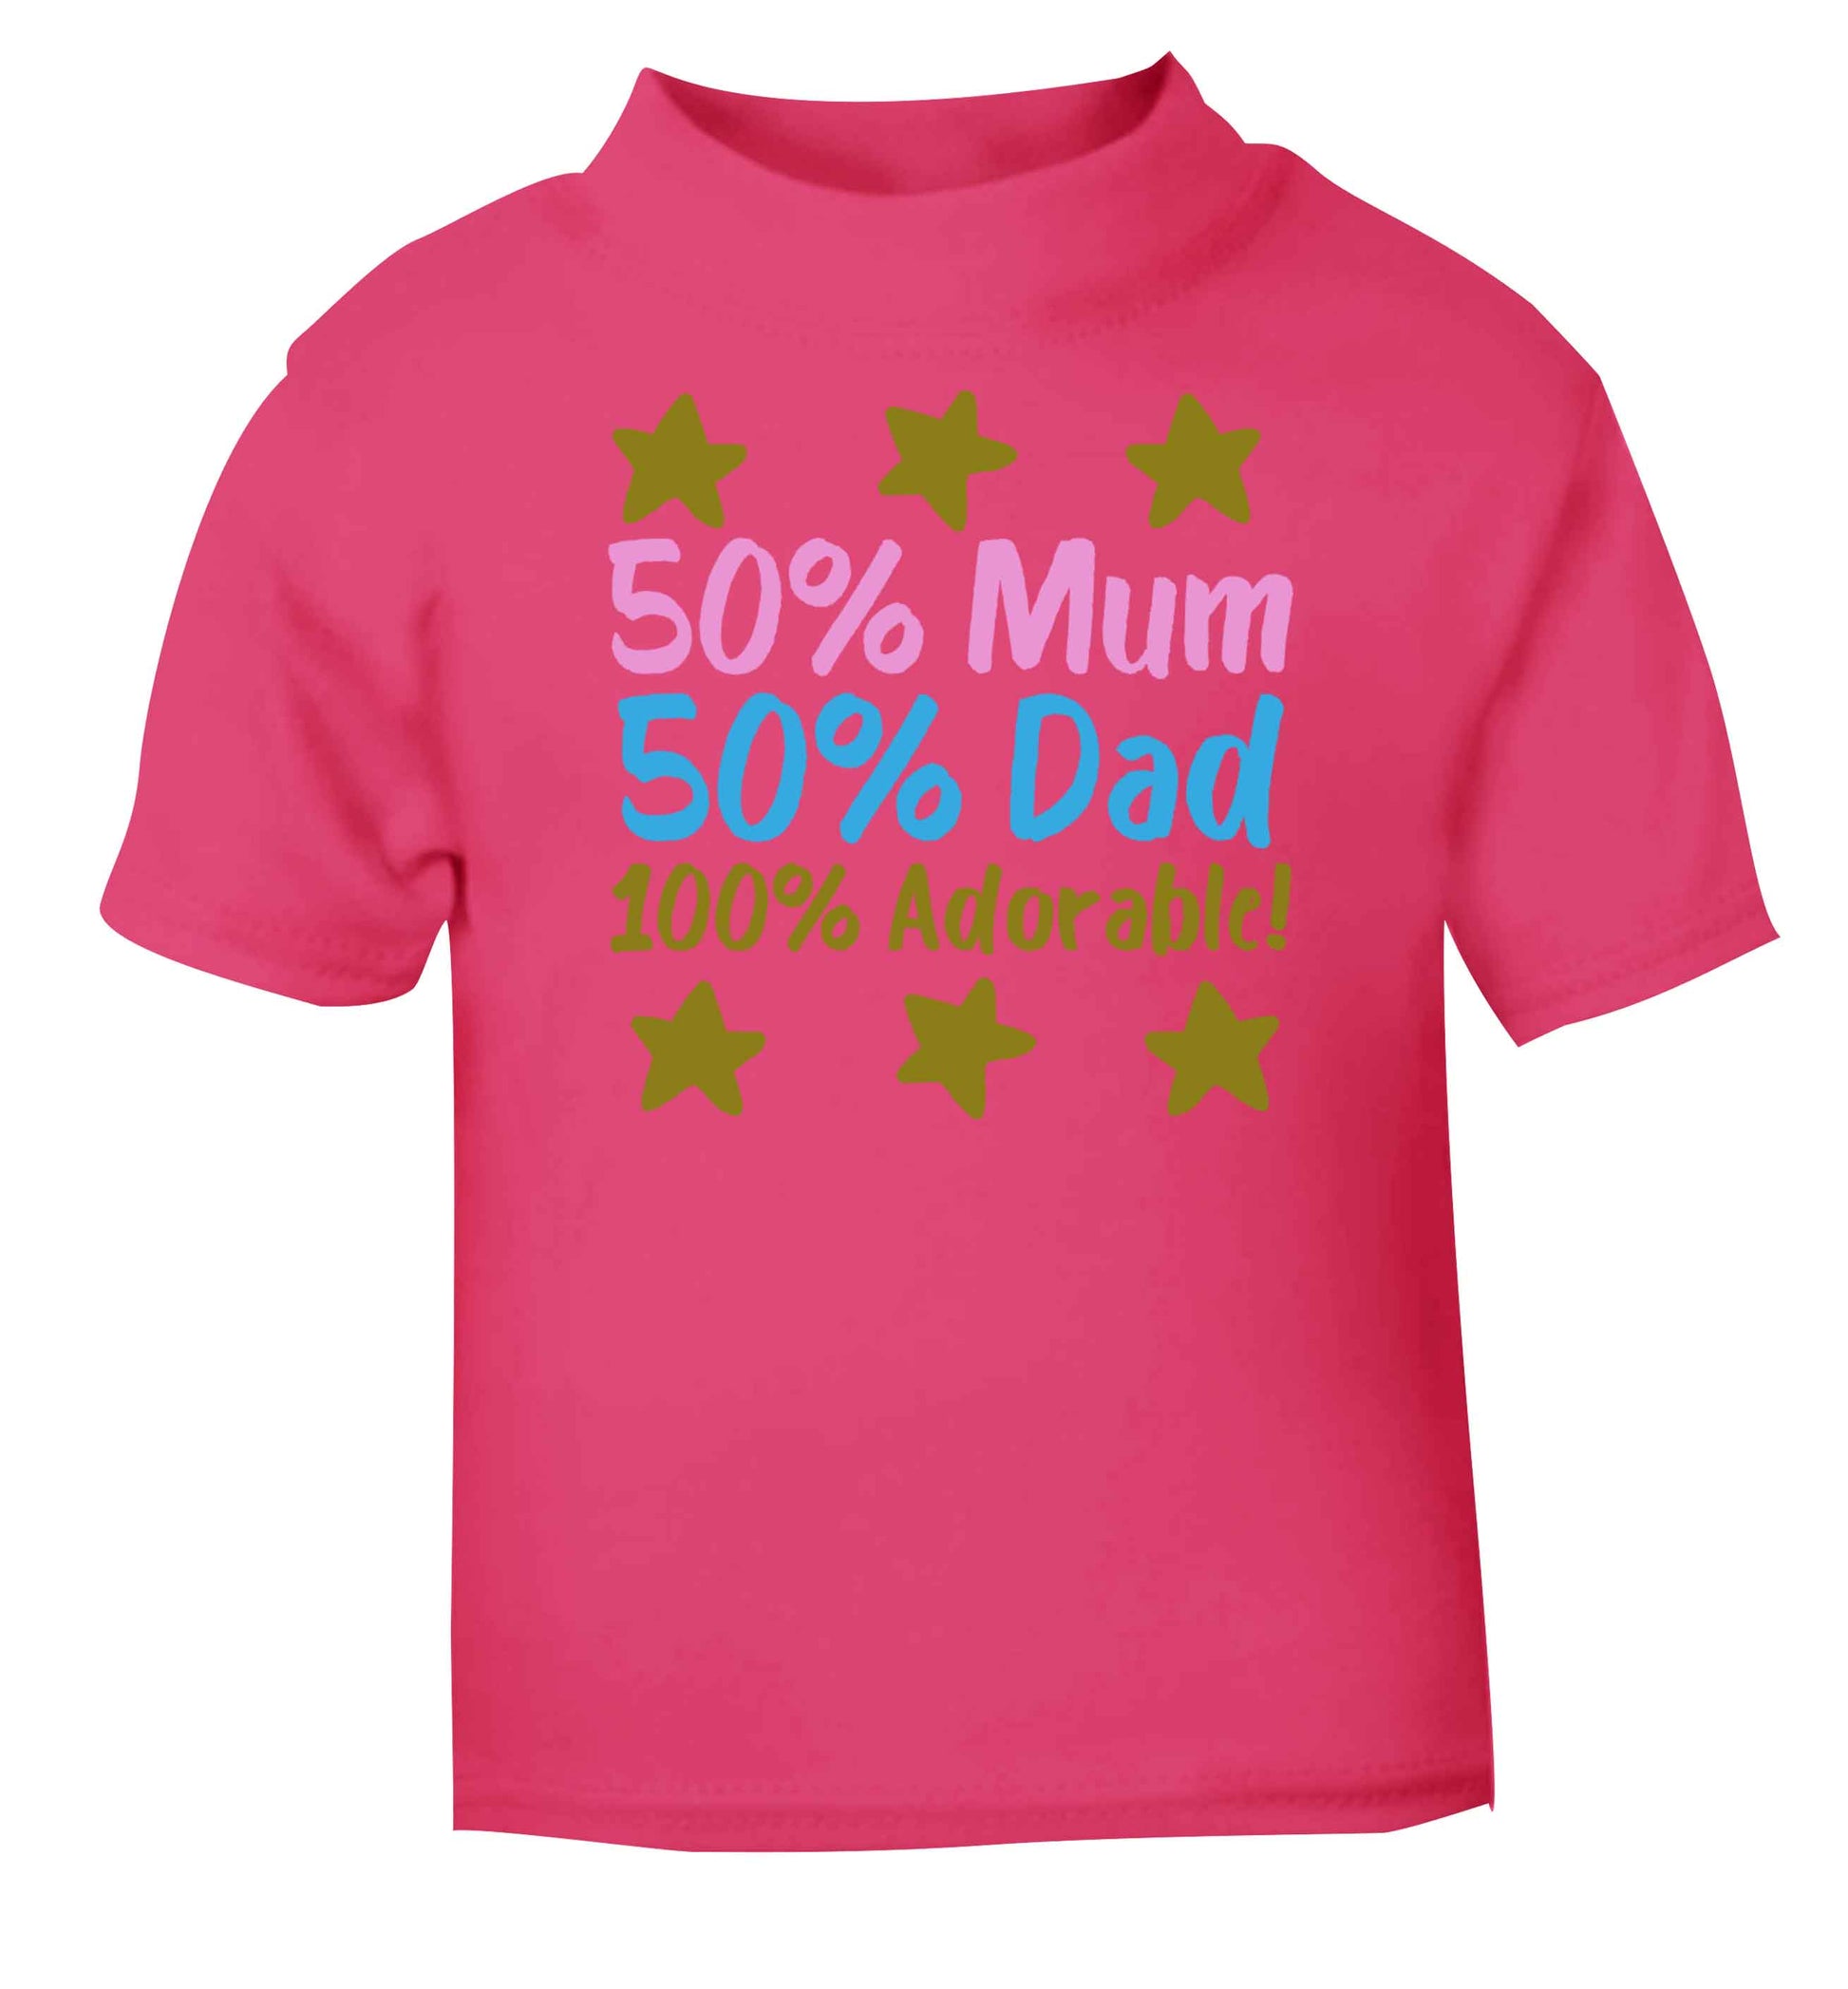 50% mum 50% dad 100% adorable pink baby toddler Tshirt 2 Years